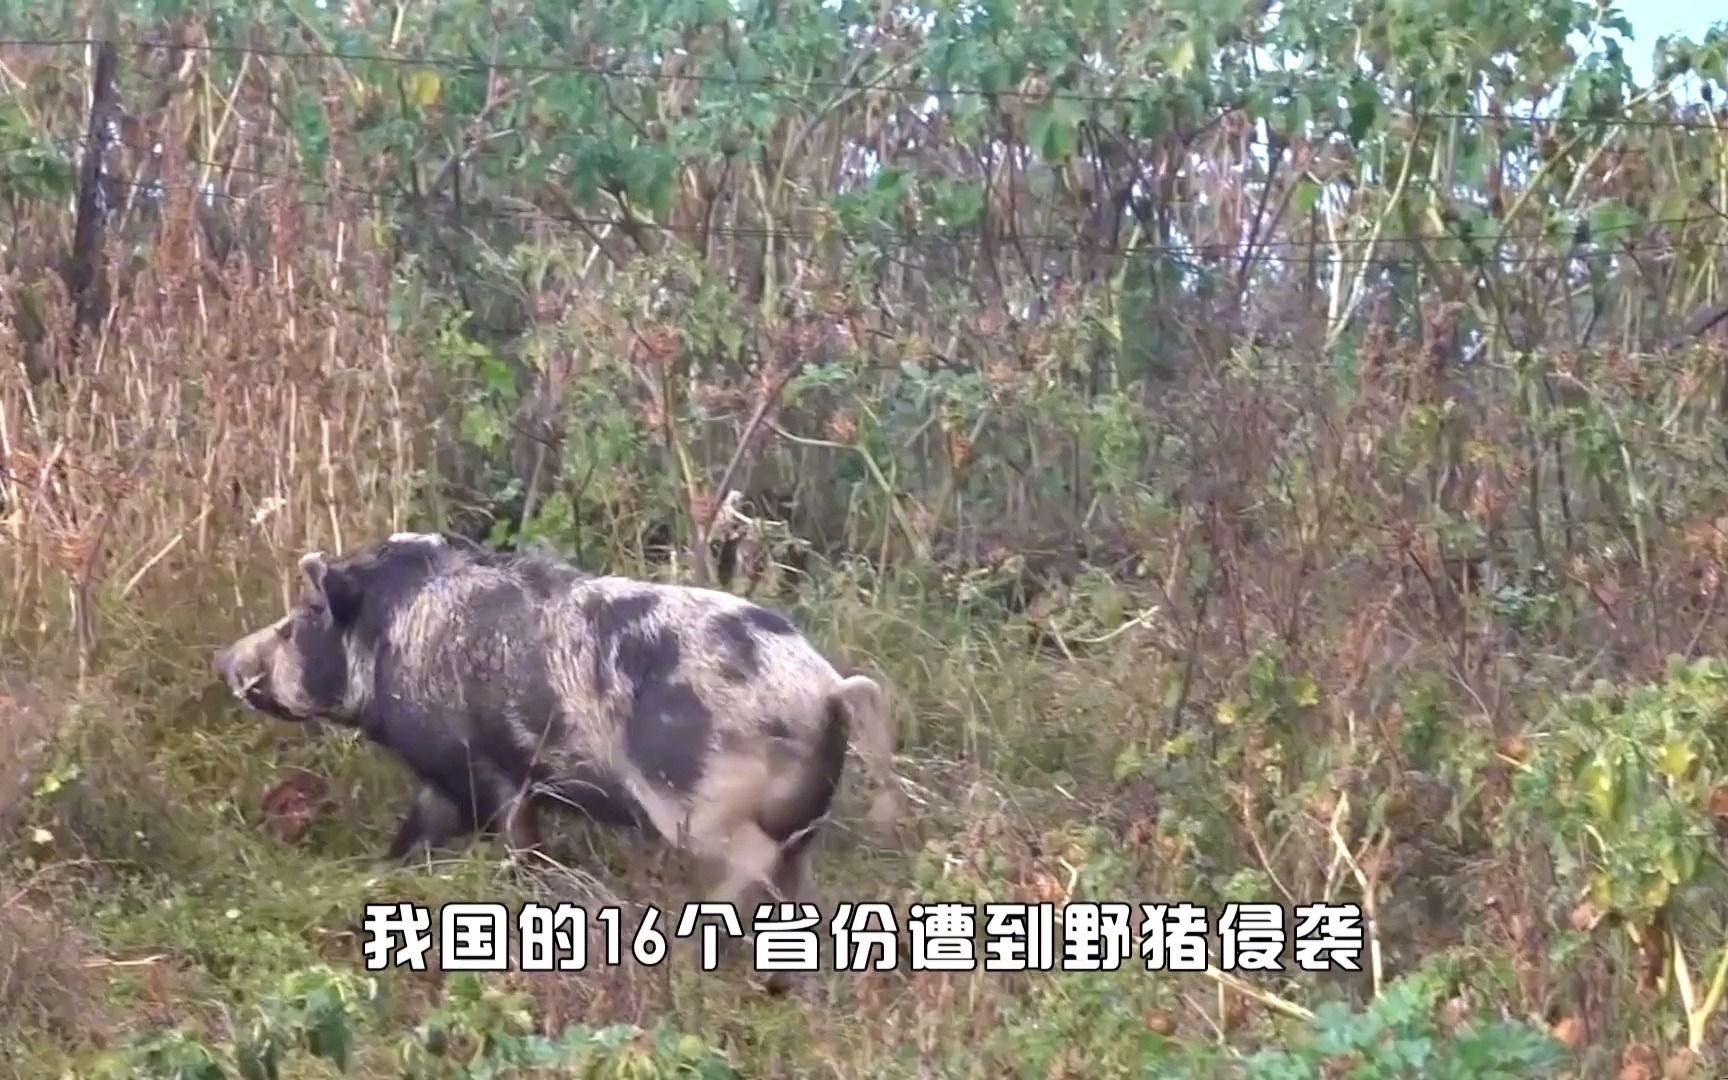 中国野猪泛滥成灾,100万头野猪入侵农村,猎人也不是它们对手